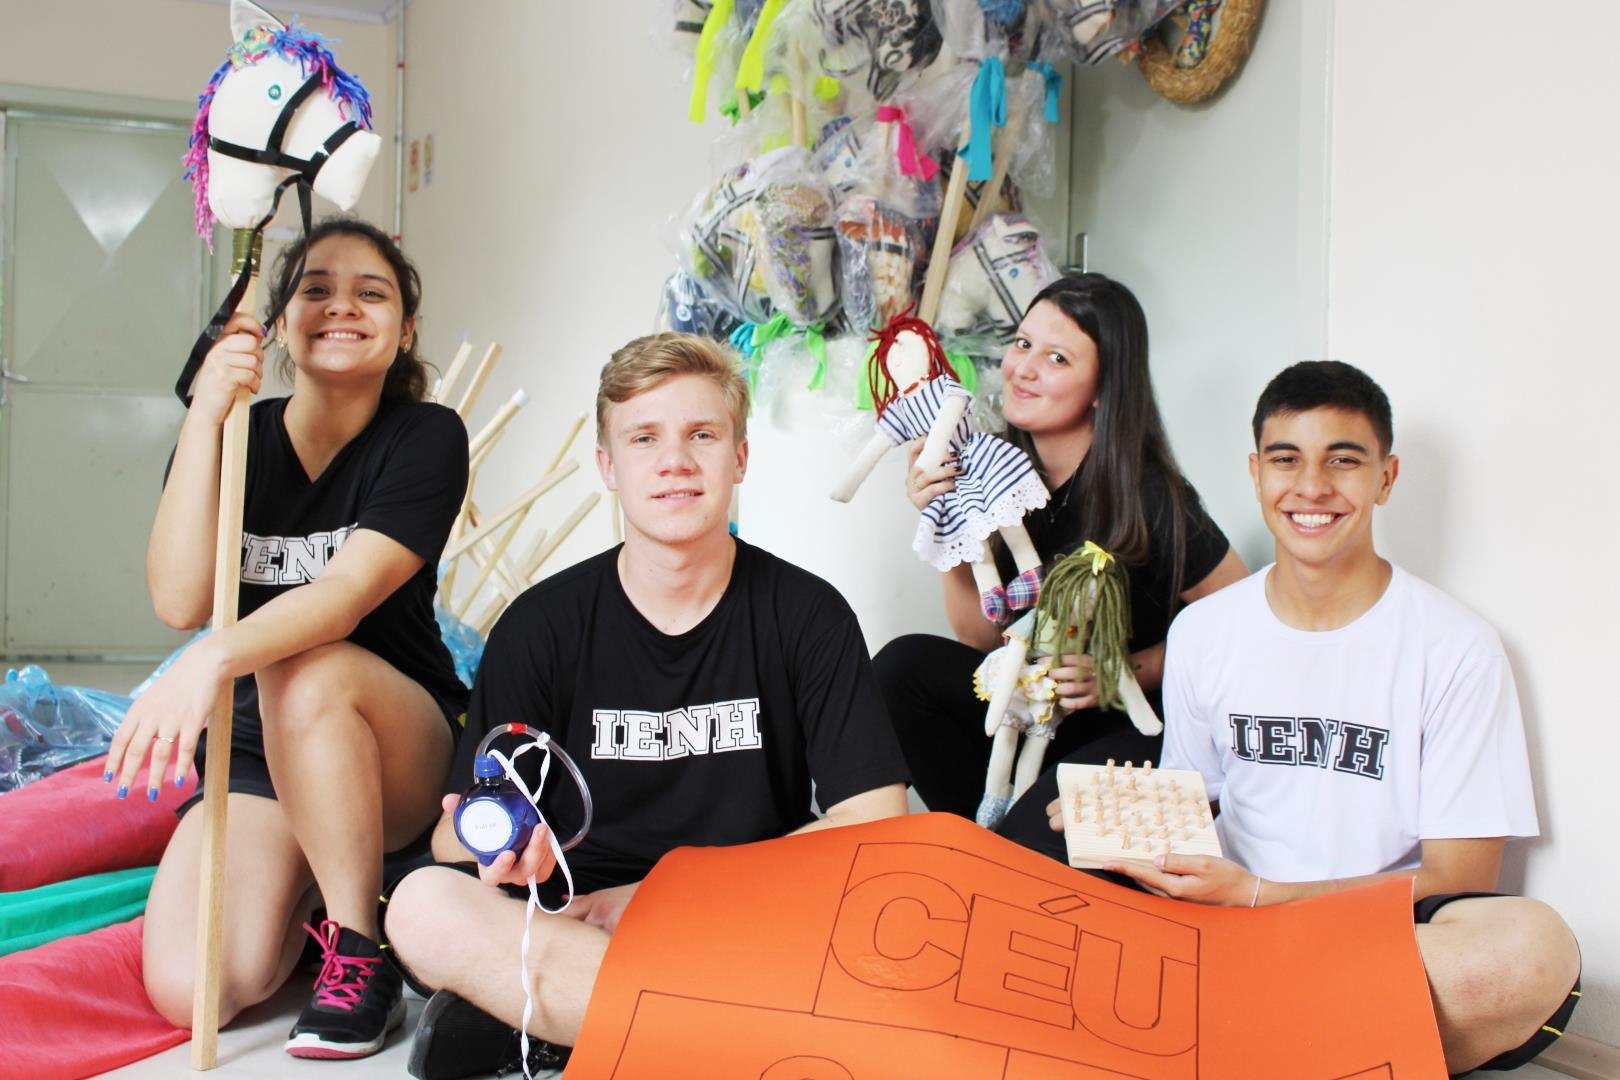 Lição de solidariedade e sustentabilidade: alunos da IENH constroem brinquedos para doação